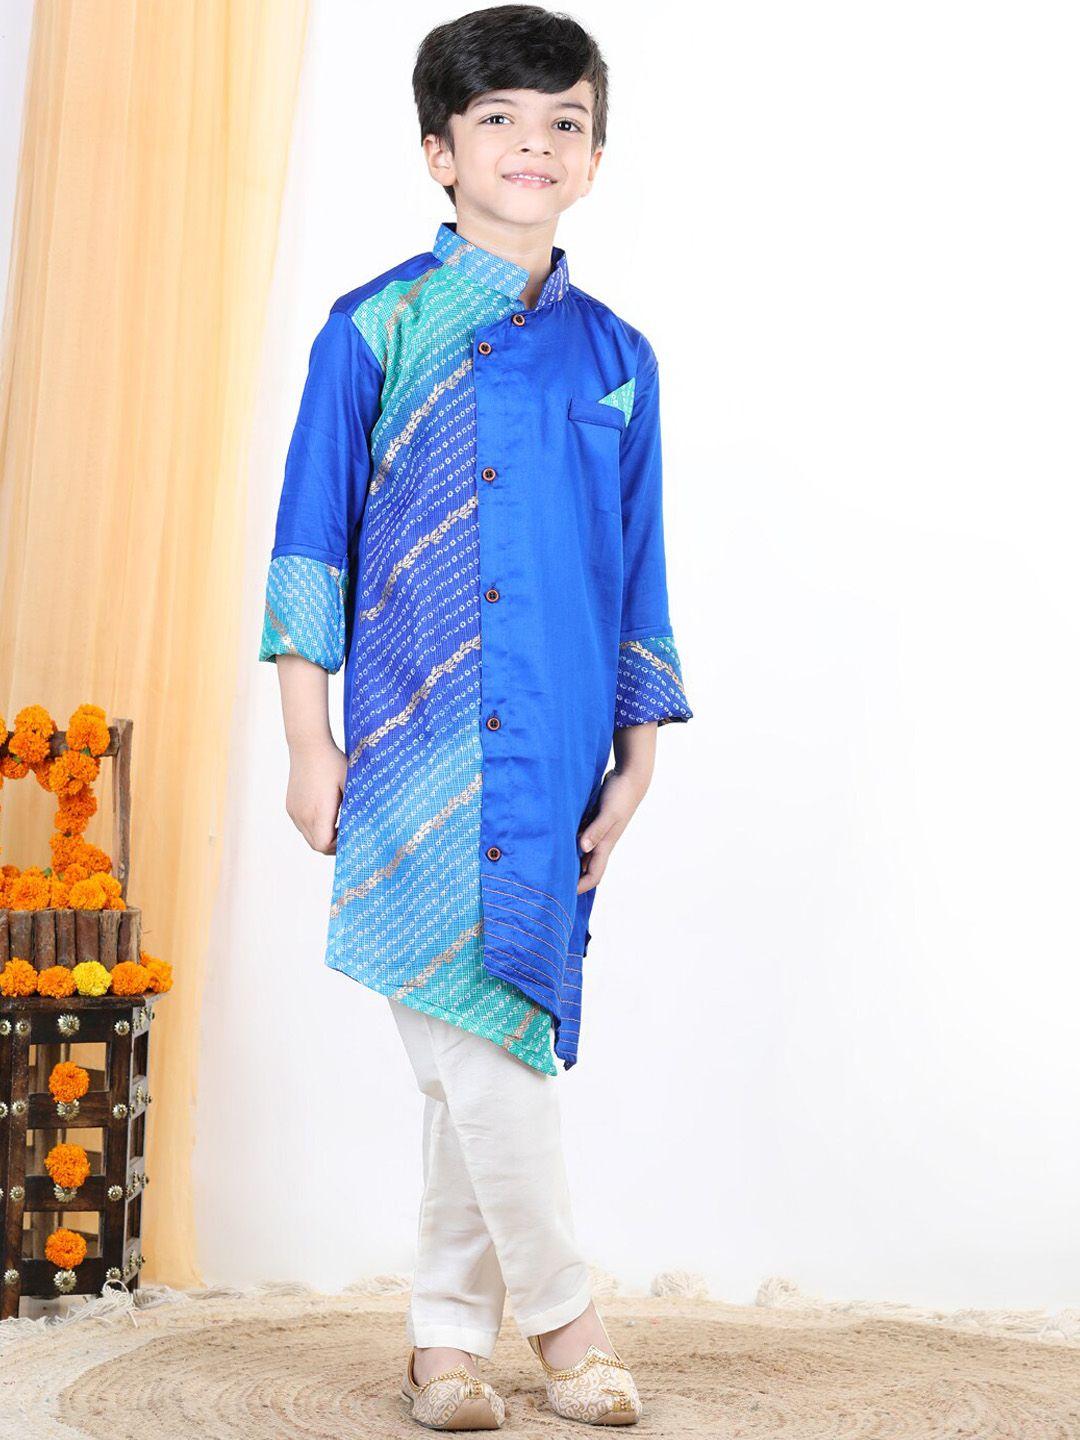 kinder kids boys blue dyed pure cotton kurta with pyjamas